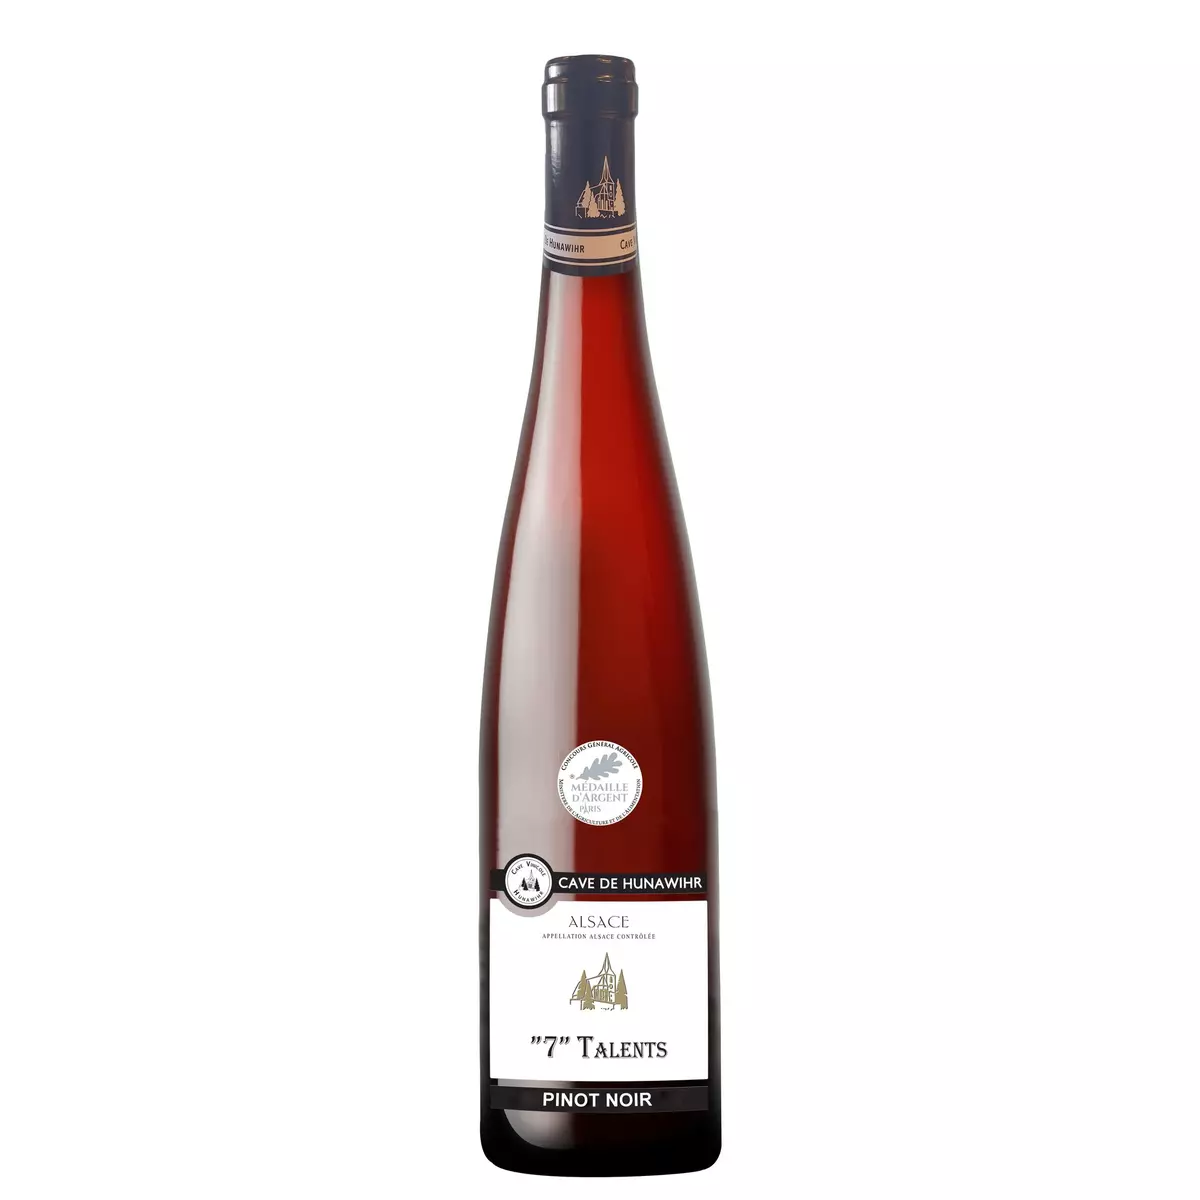 Vin rouge AOP Alsace pinot noir "7" Talents 75cl